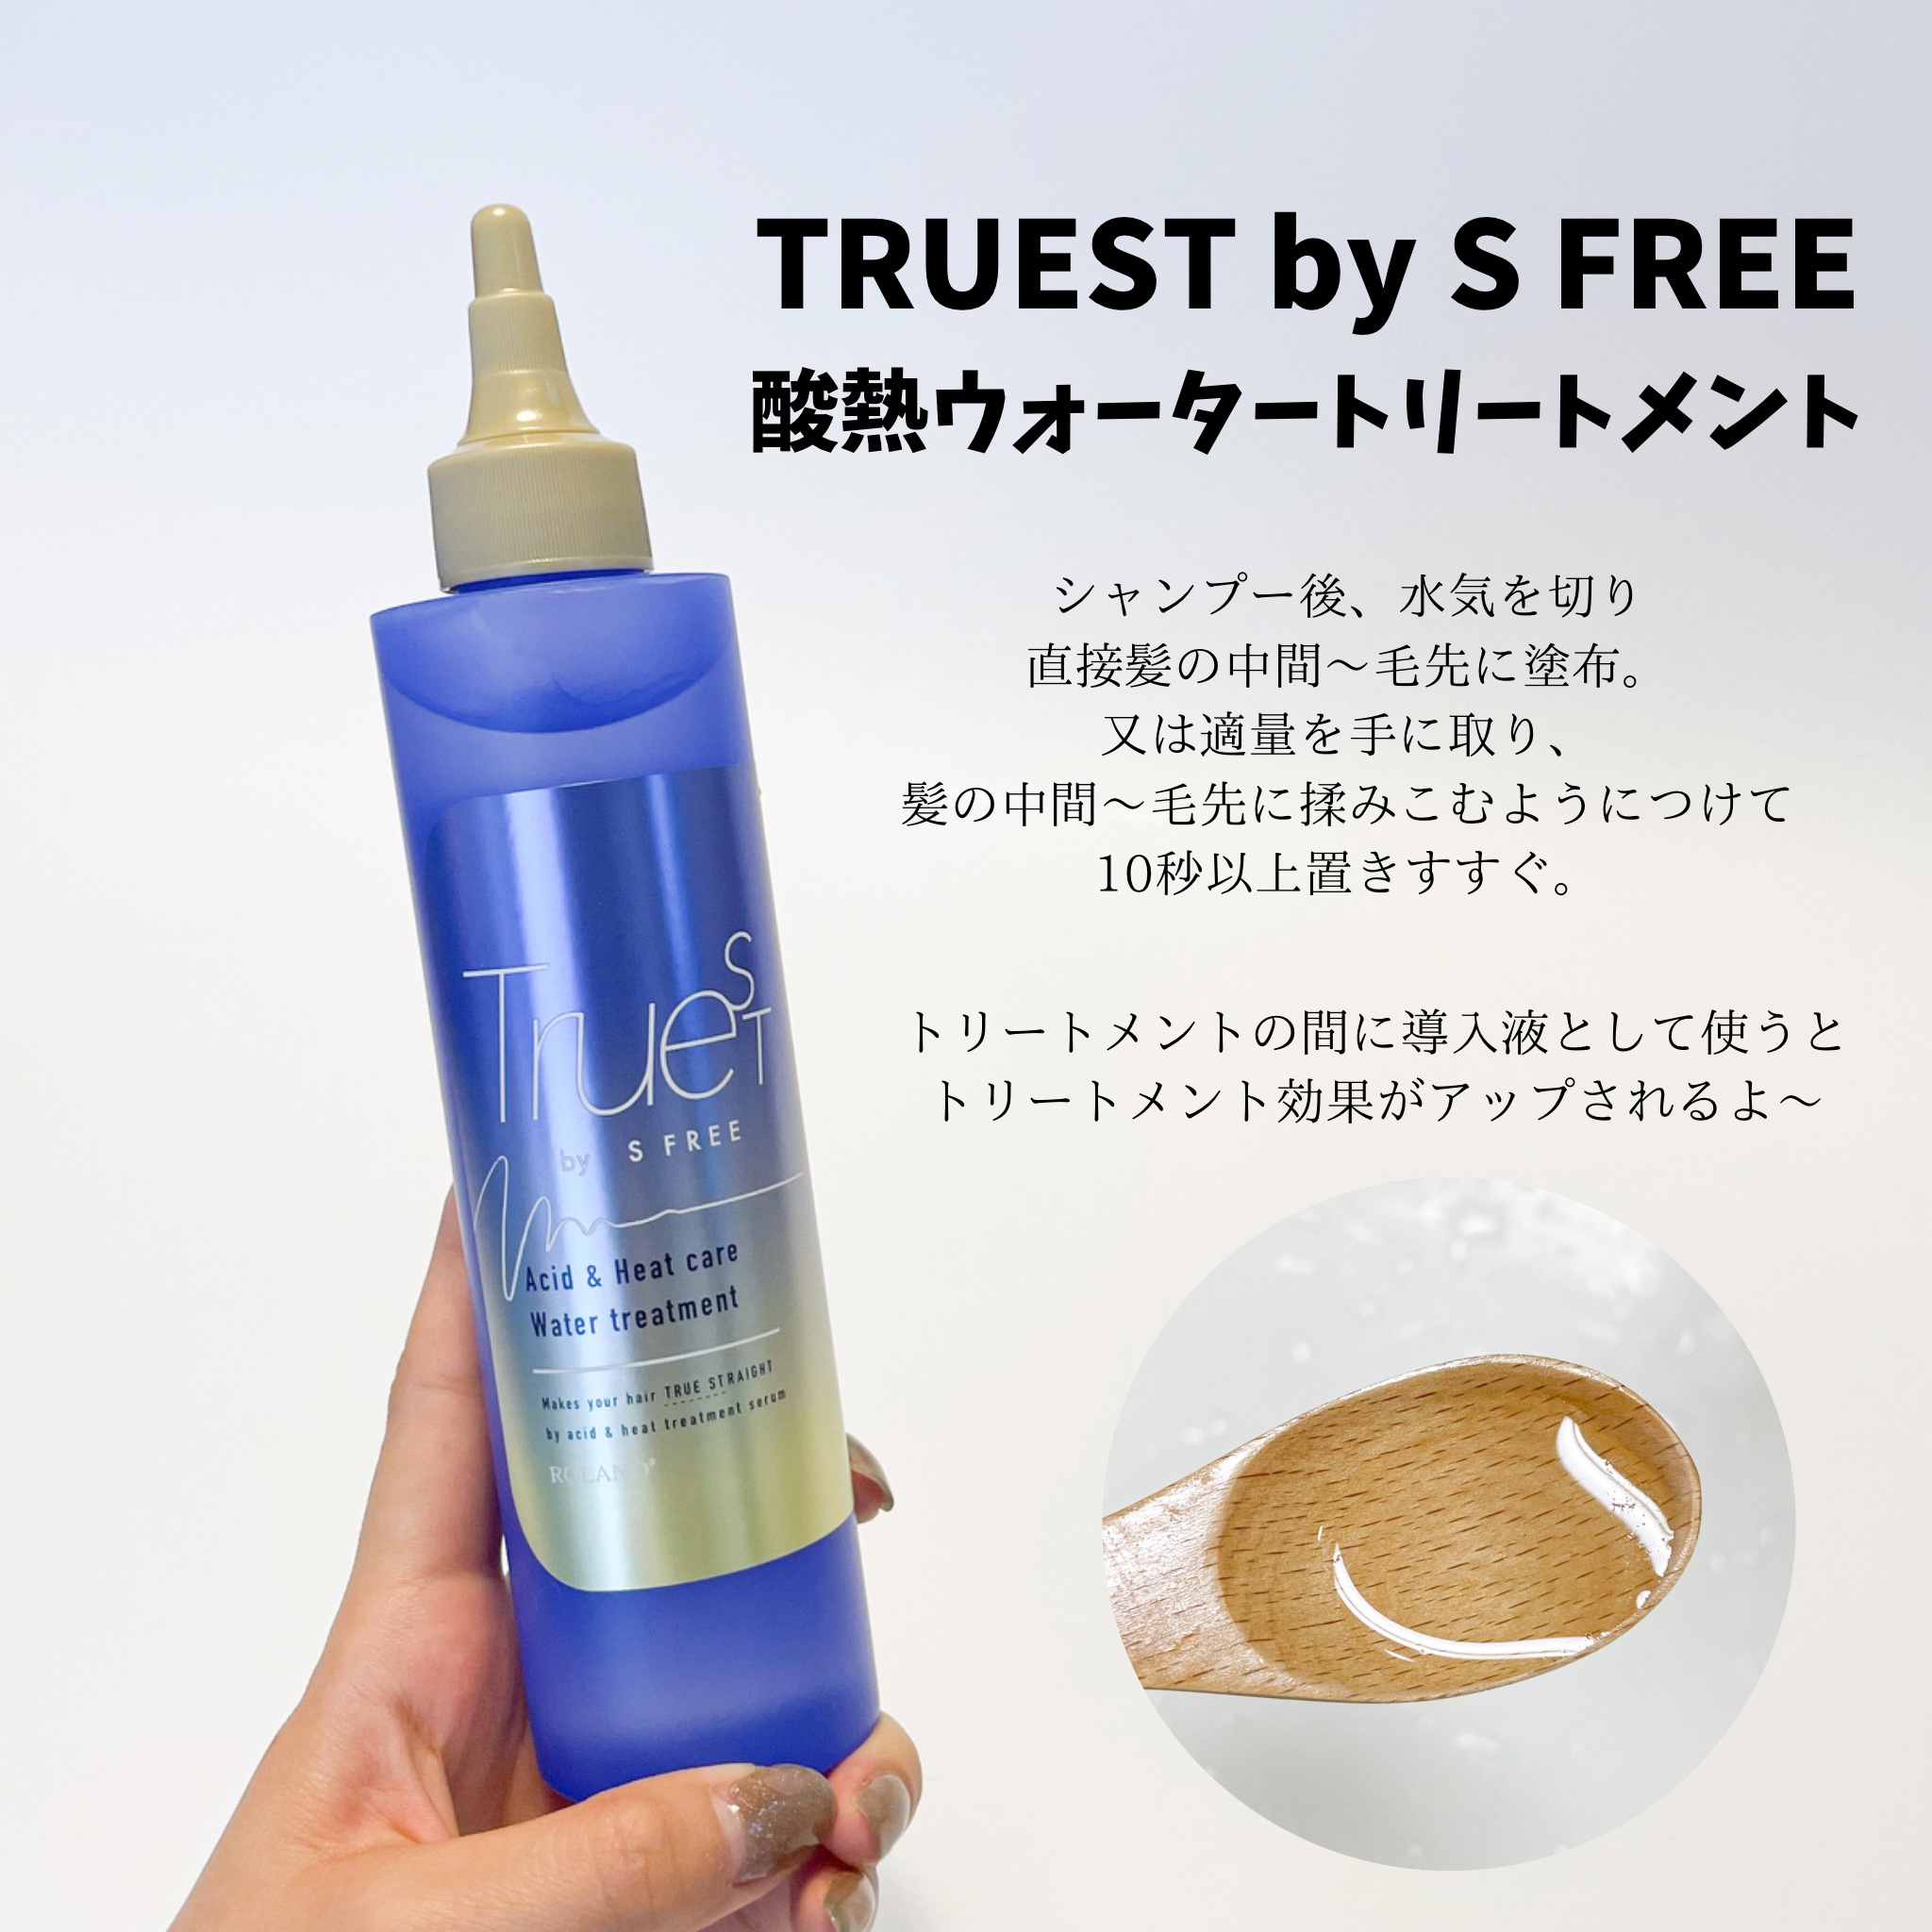 TRUEST(トゥルースト) by S FREE / 酸熱ウォータートリートメントの公式商品情報｜美容・化粧品情報はアットコスメ